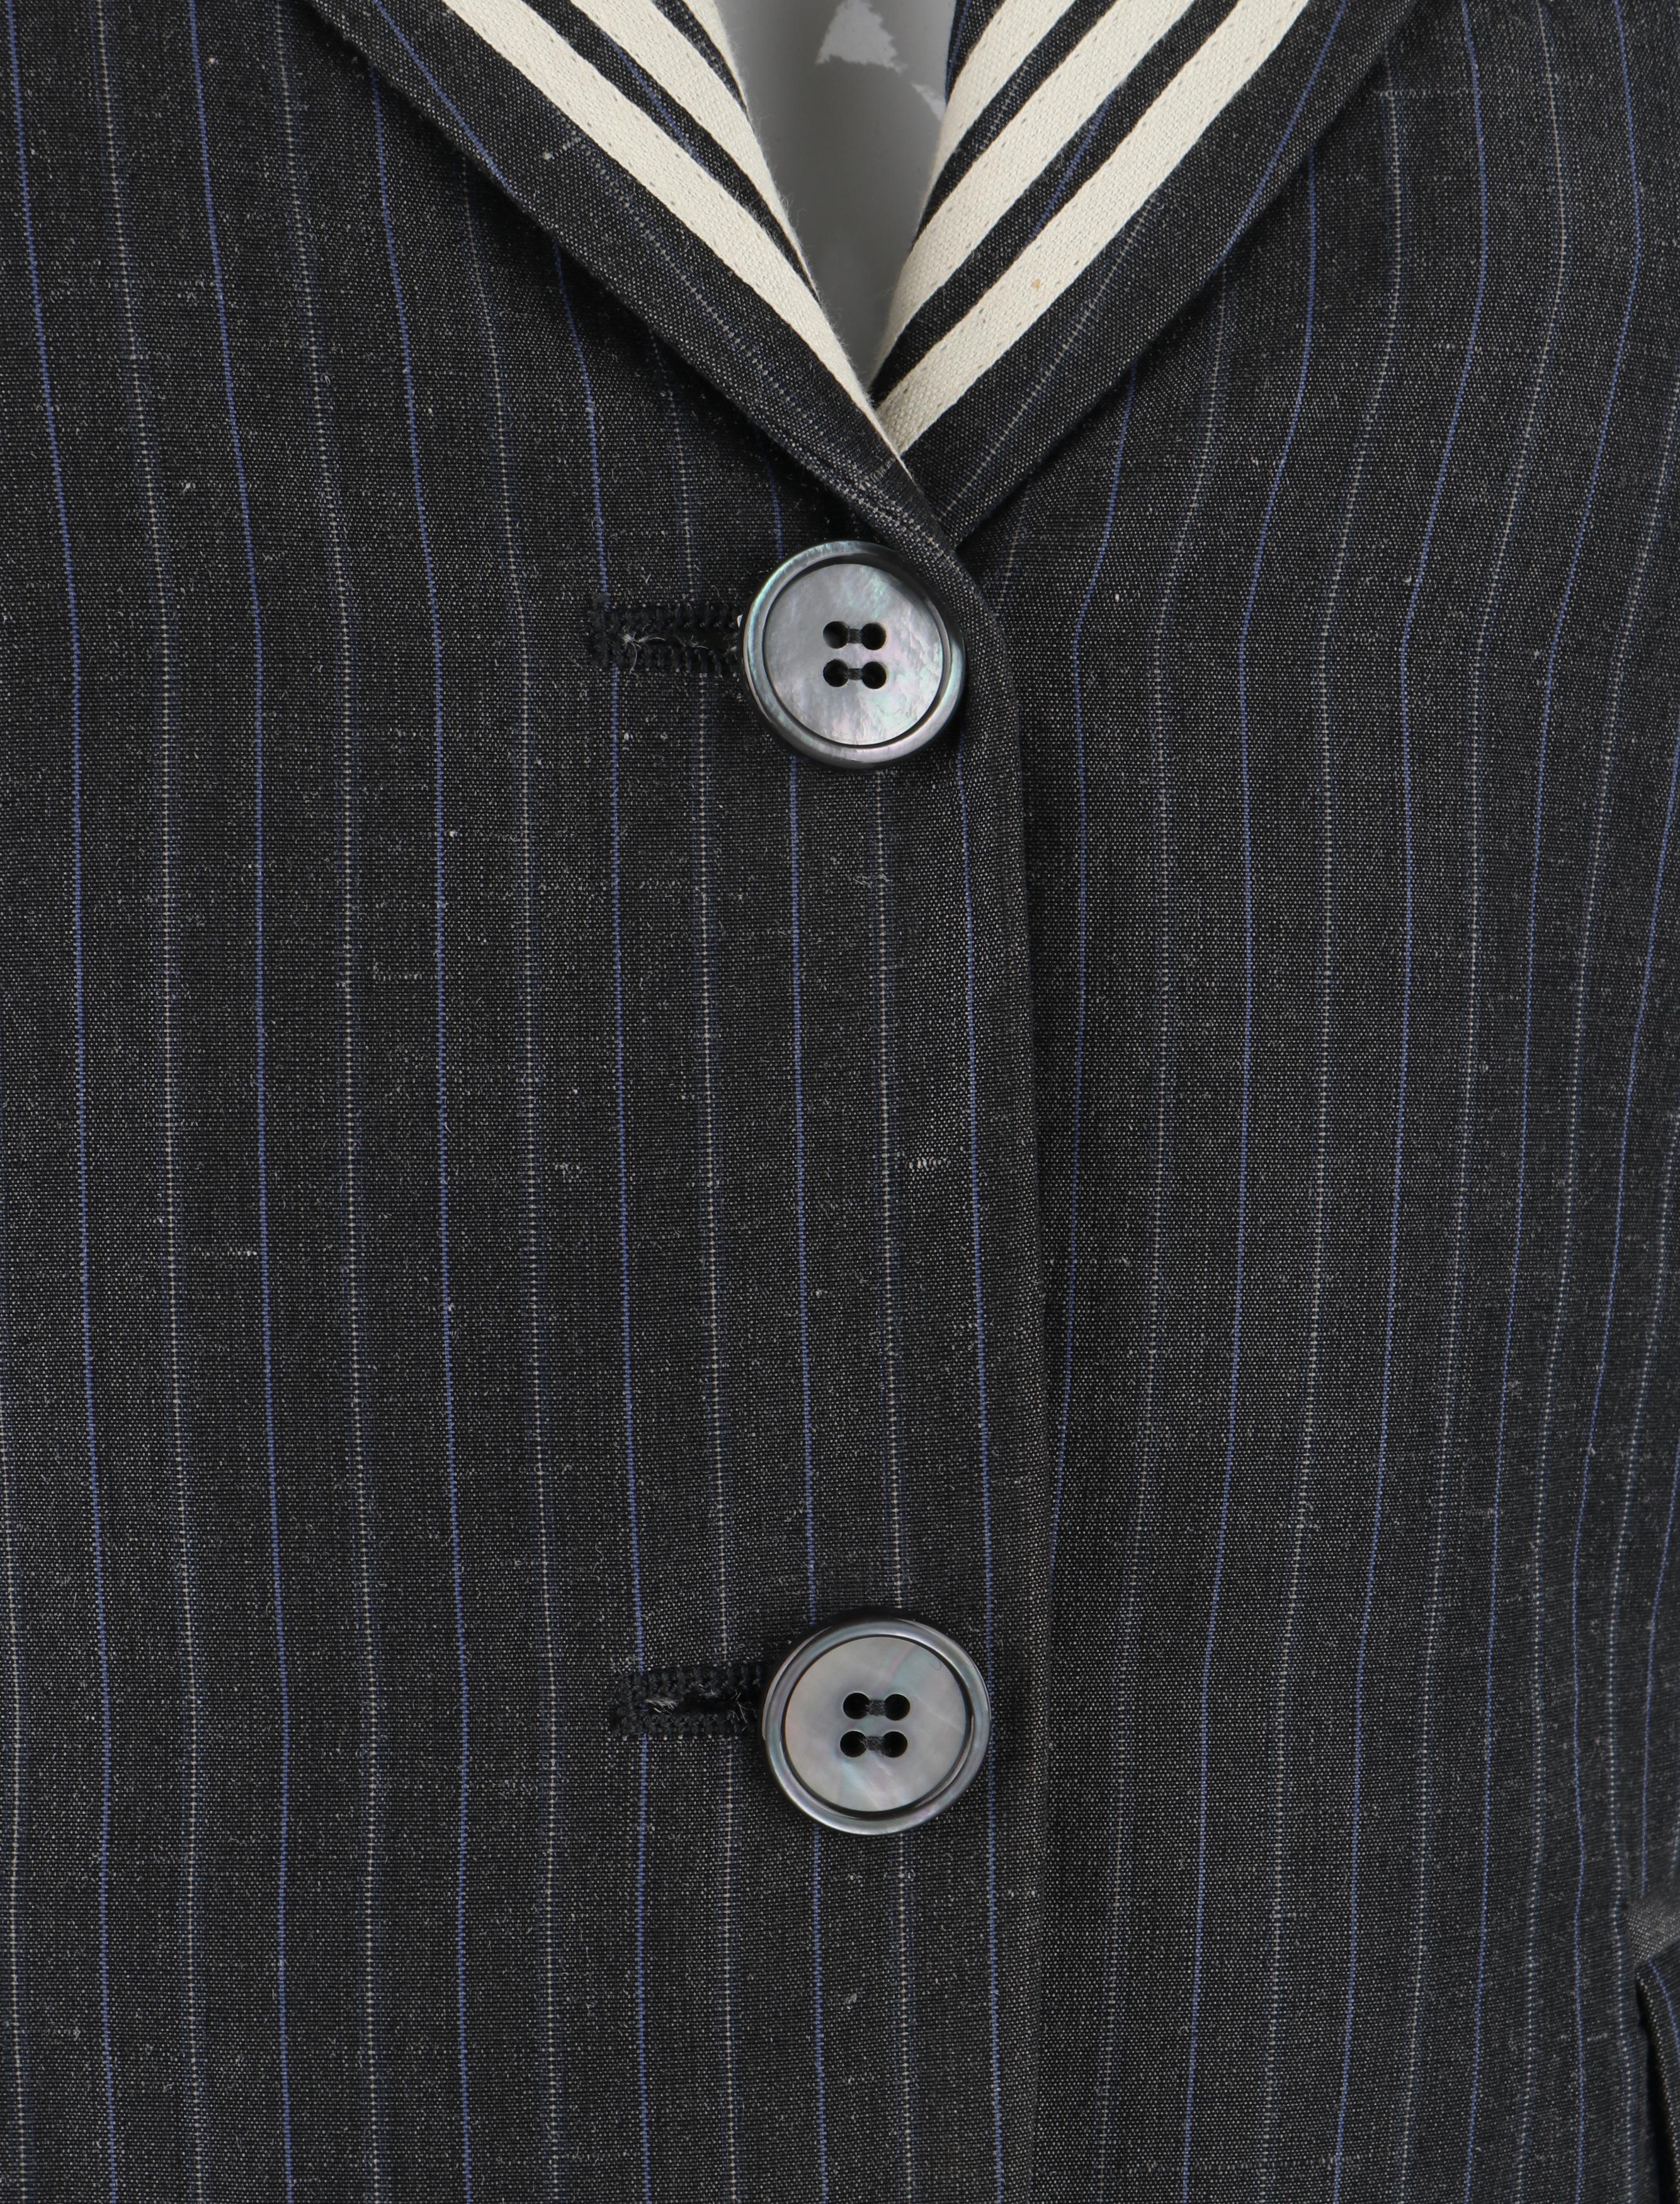 ALEXANDER McQUEEN S/S 2005 Grey Pinstripe Sailor Blazer Jacket Shawl Collar  For Sale 3